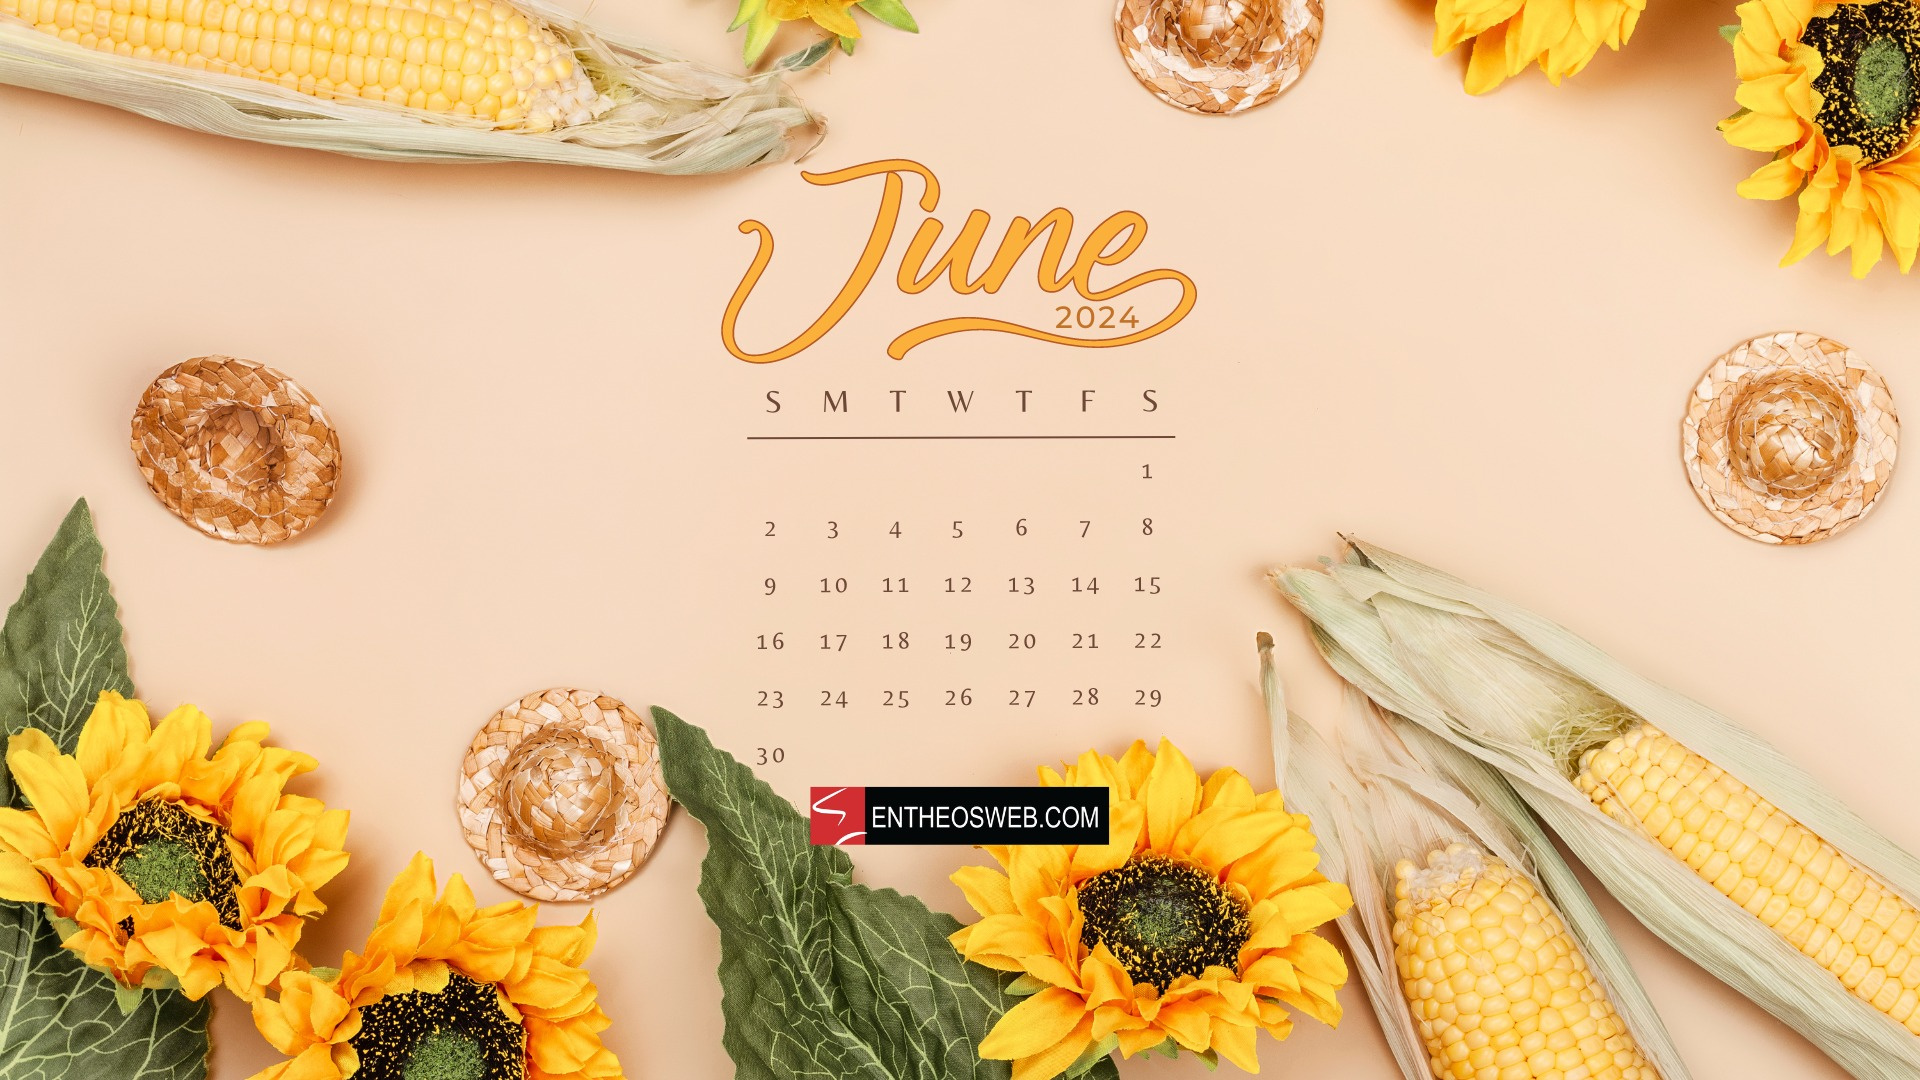 June 2024 Desktop Wallpaper Calendars | Entheosweb intended for June 2024 Calendar Desktop Wallpaper